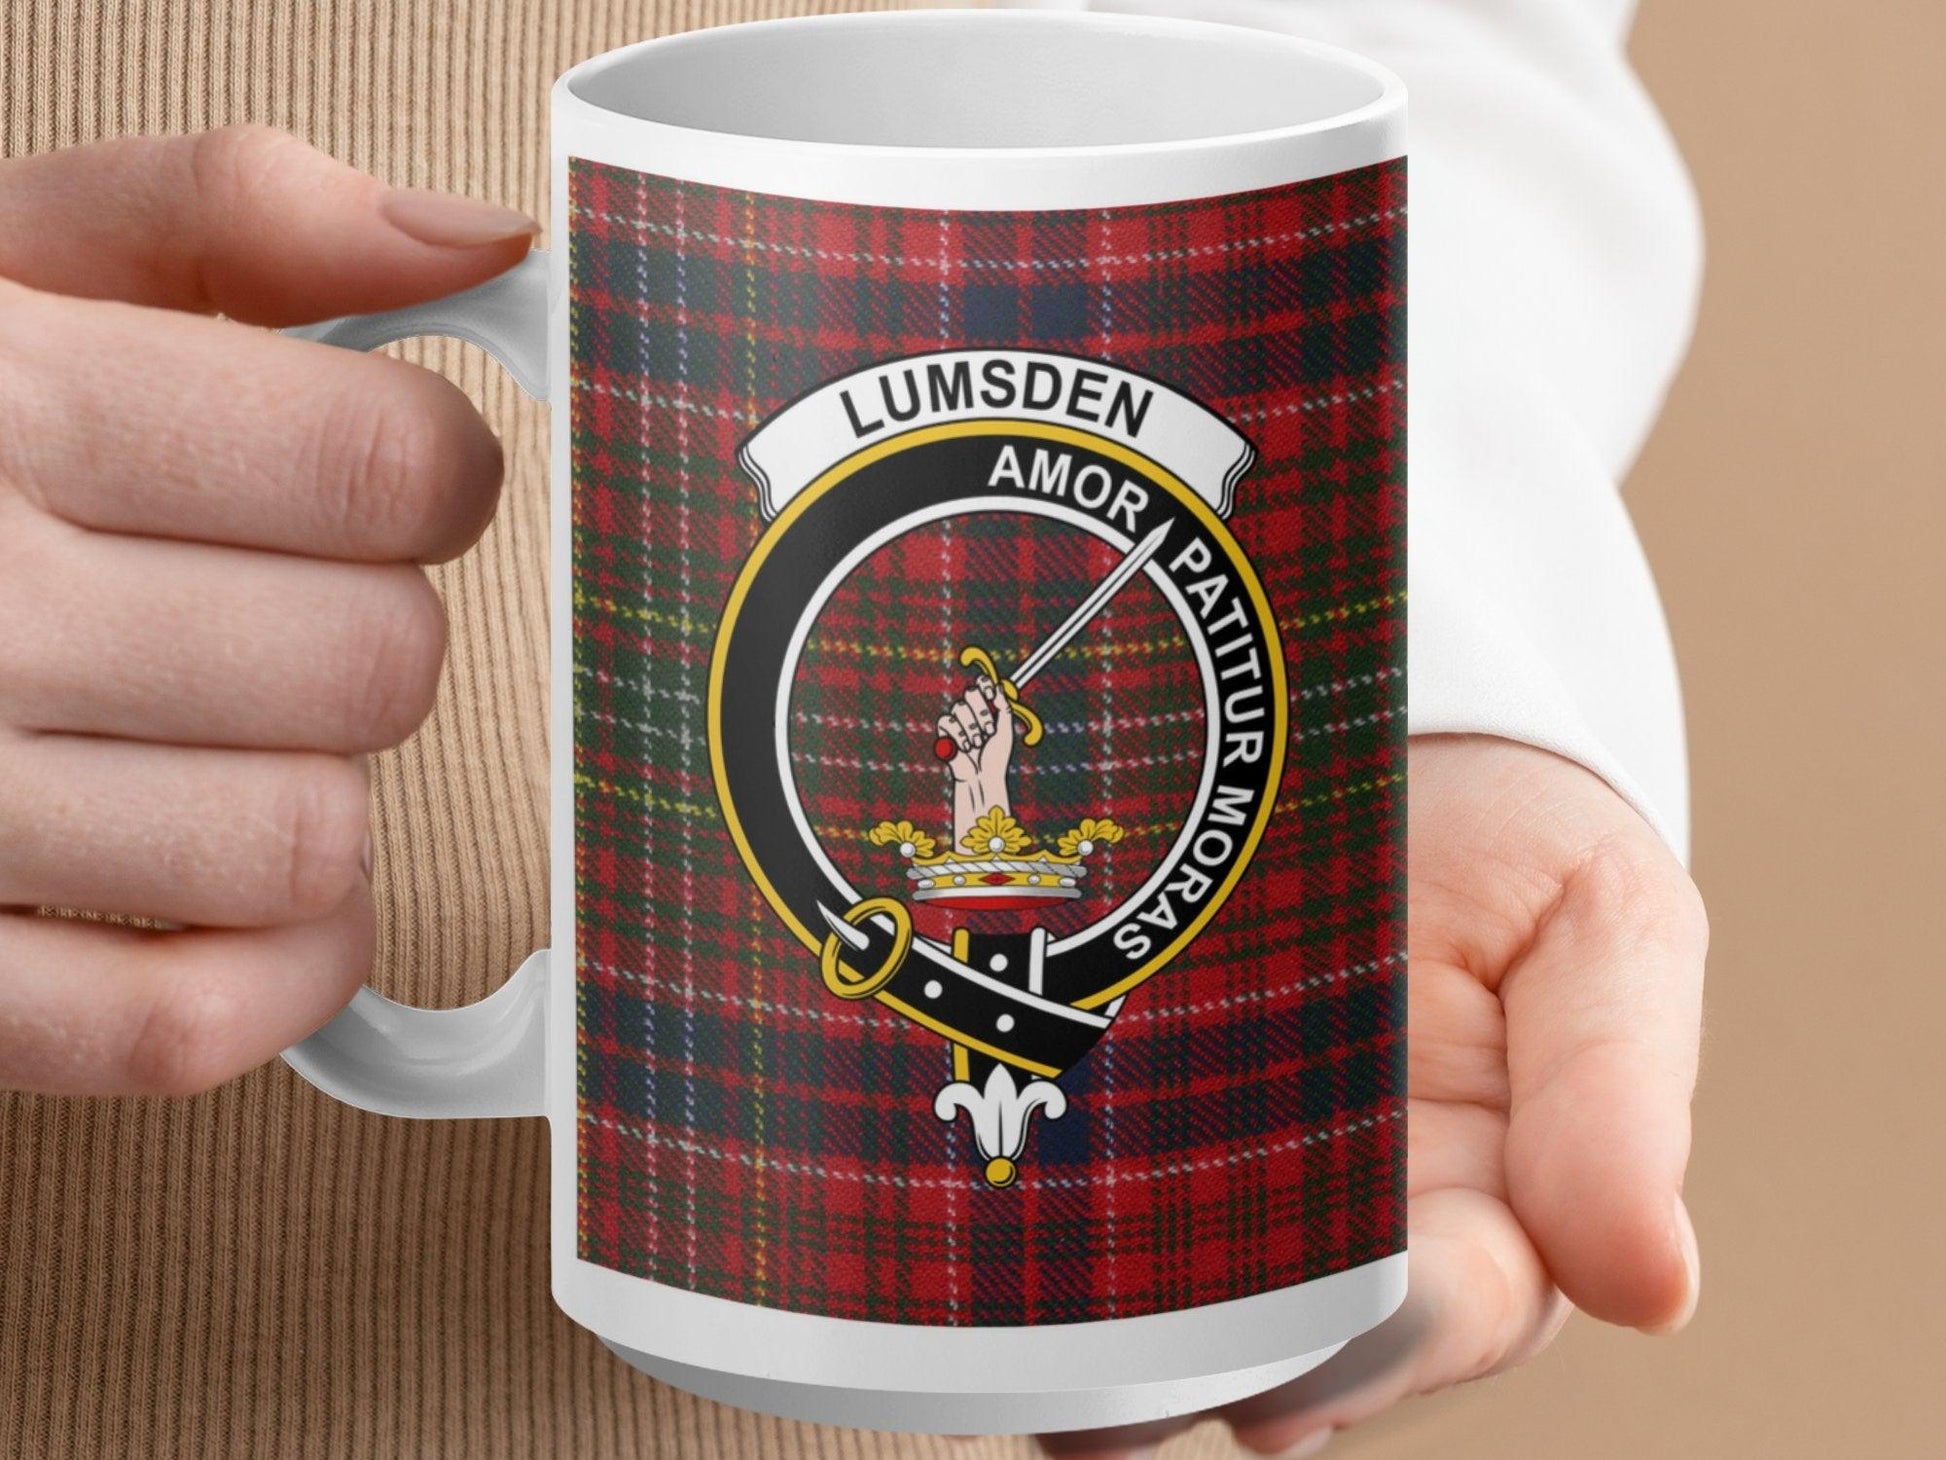 Scottish Clan Lumsden Plaid Tartan Mug - Living Stone Gifts